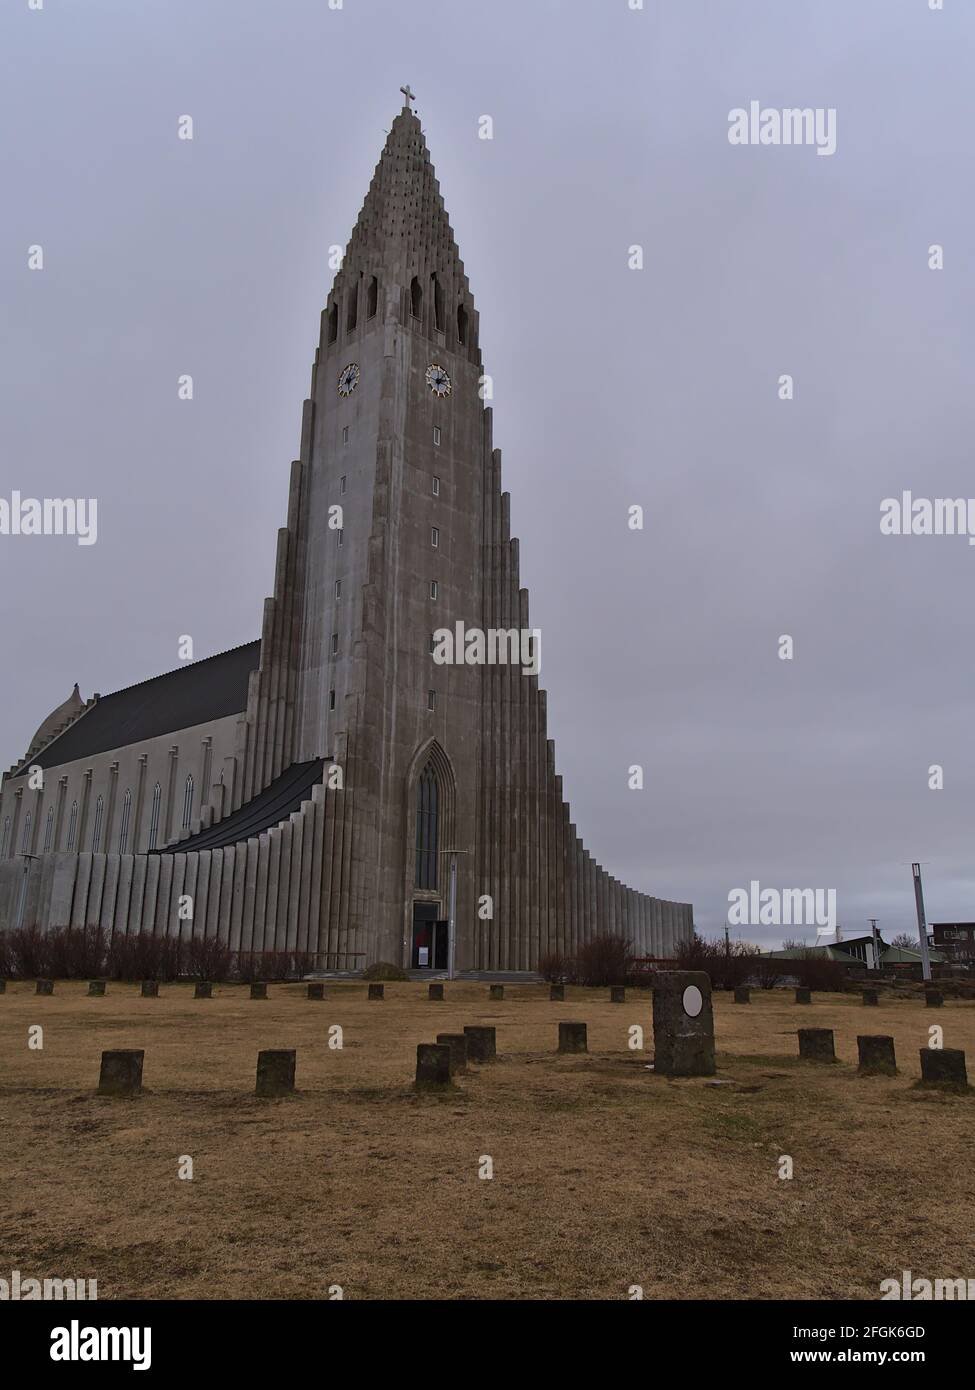 Vista del famoso Hallgrímskirkja, una iglesia parroquial luterana en Reykjavík, capital de Islandia, con una altura de más de 74 m en el día nublado del invierno. Foto de stock